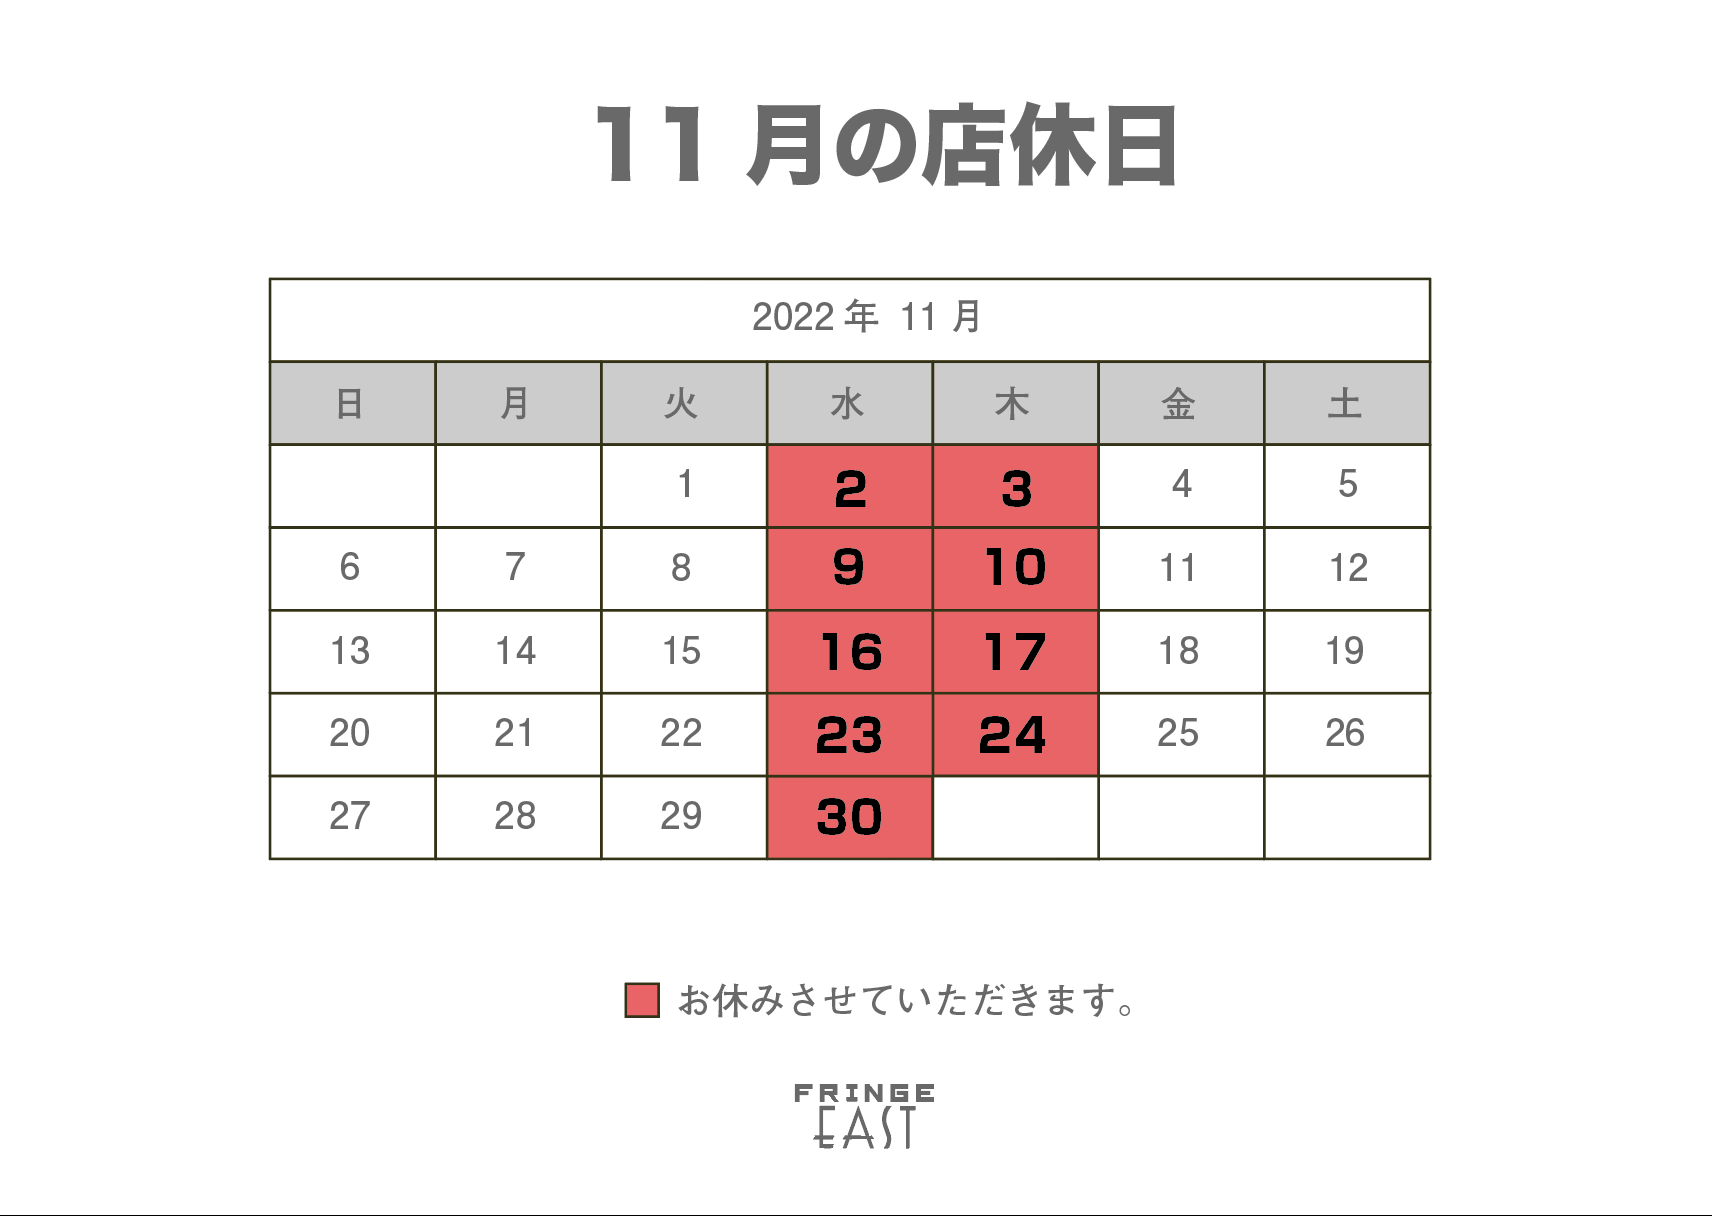 【お知らせ】店休日 11/23(水)24(木)